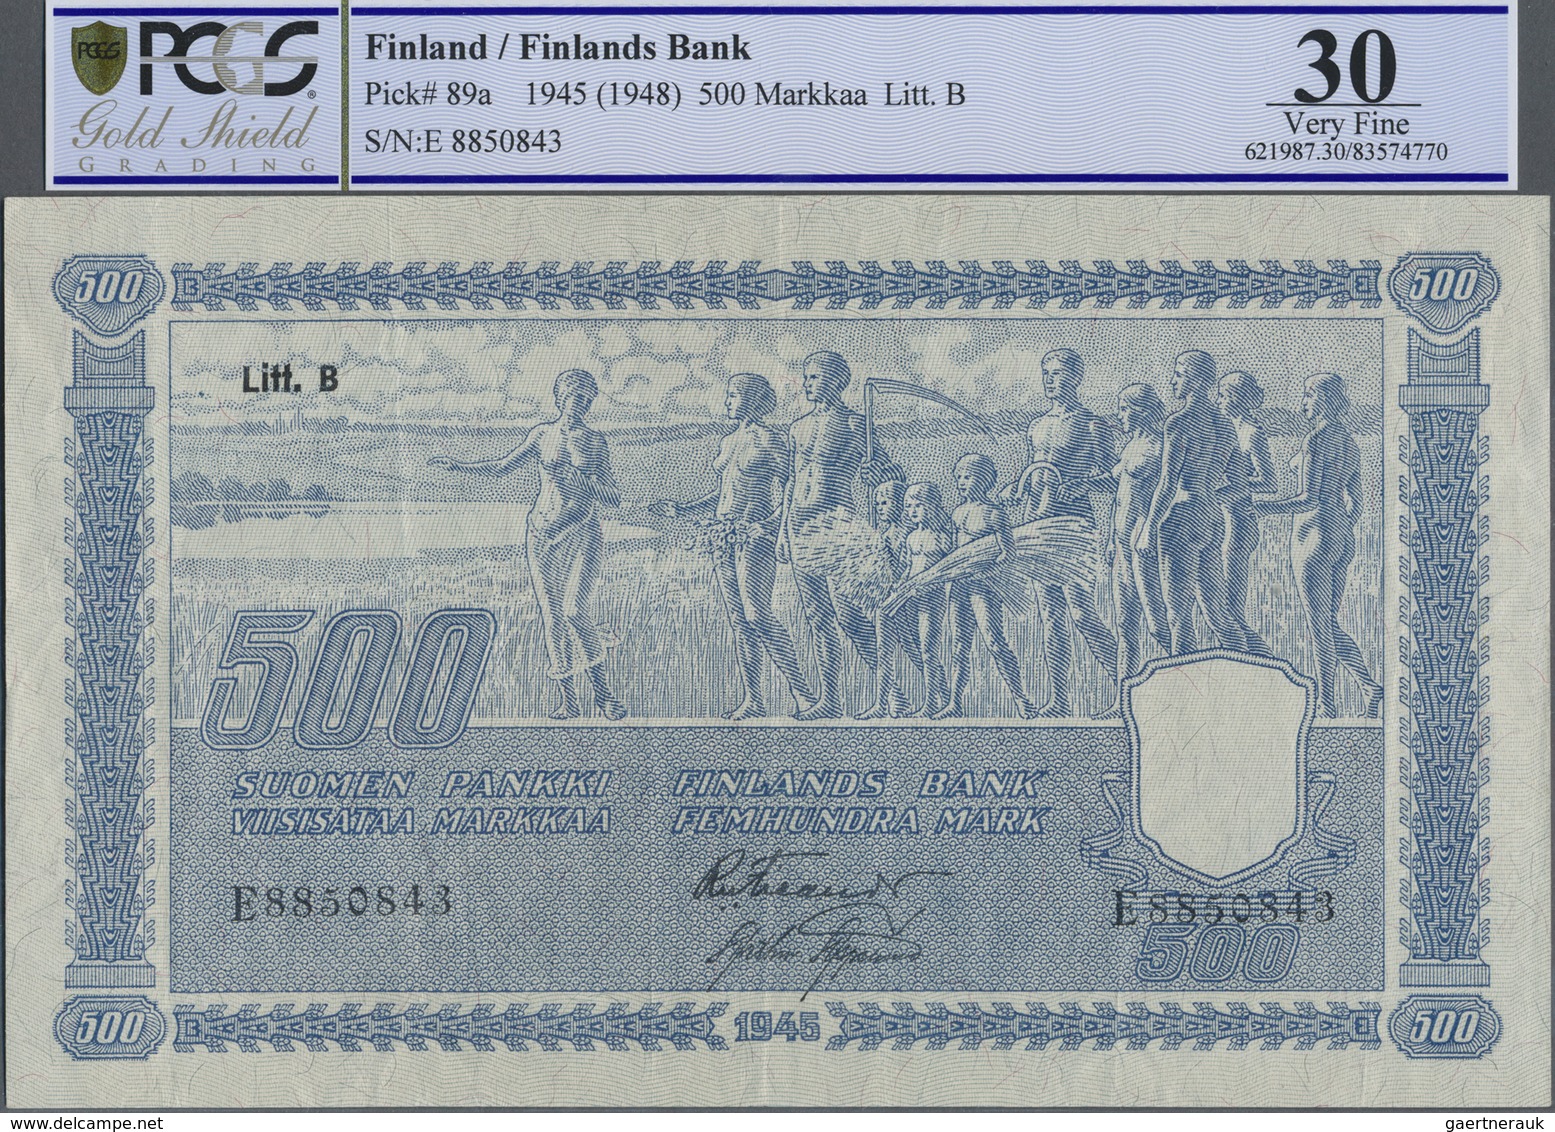 Finland / Finnland: 500 Markkaa 1945, Litt. B, P.89a, Vertical And Horizontal Folds And Afew Minor S - Finland